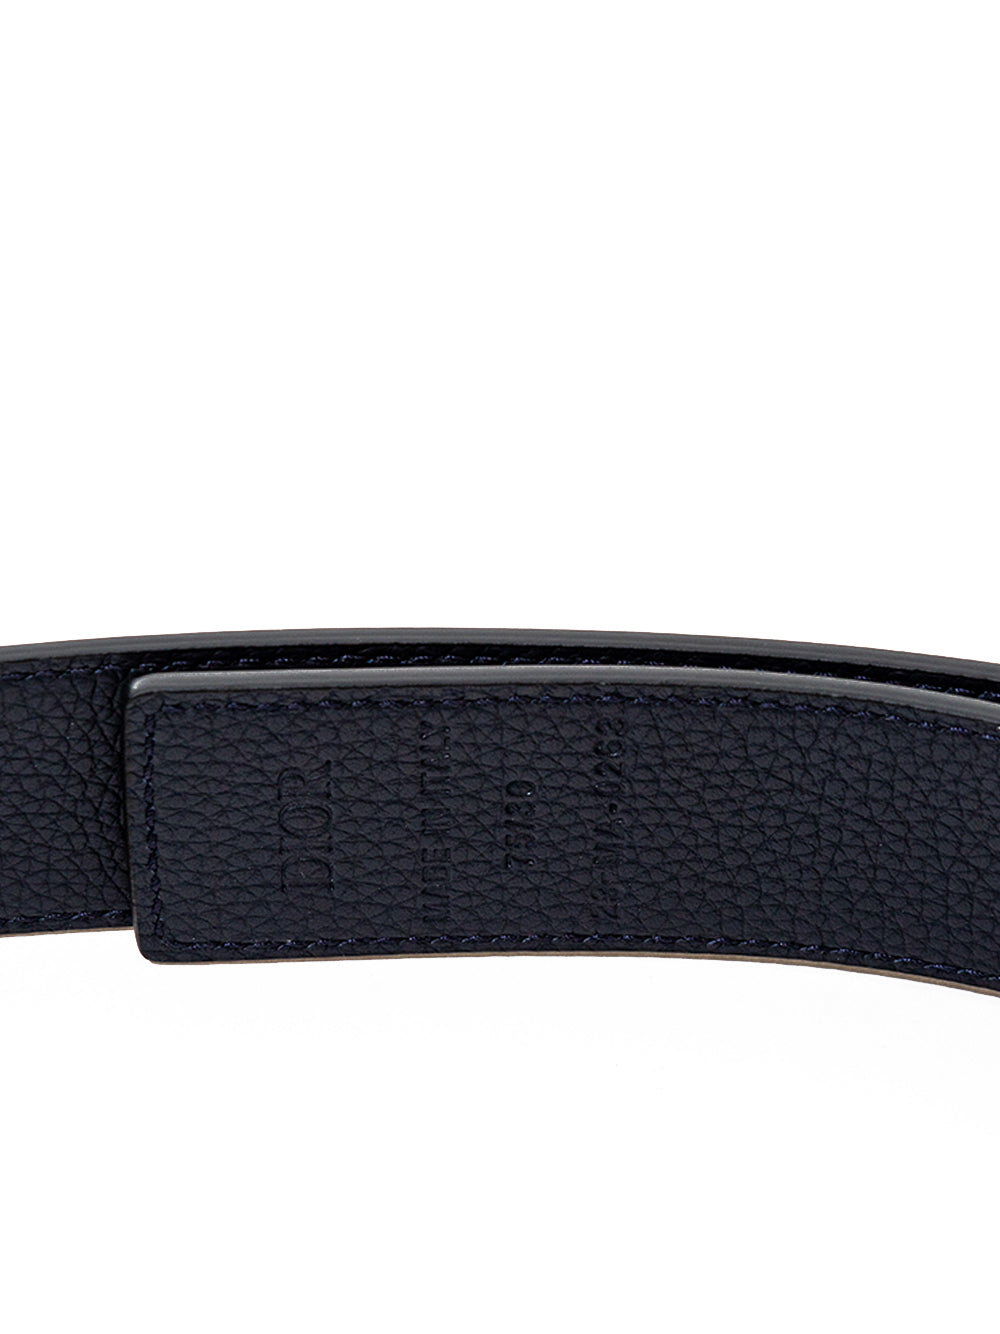 Dior Black Leather Belt